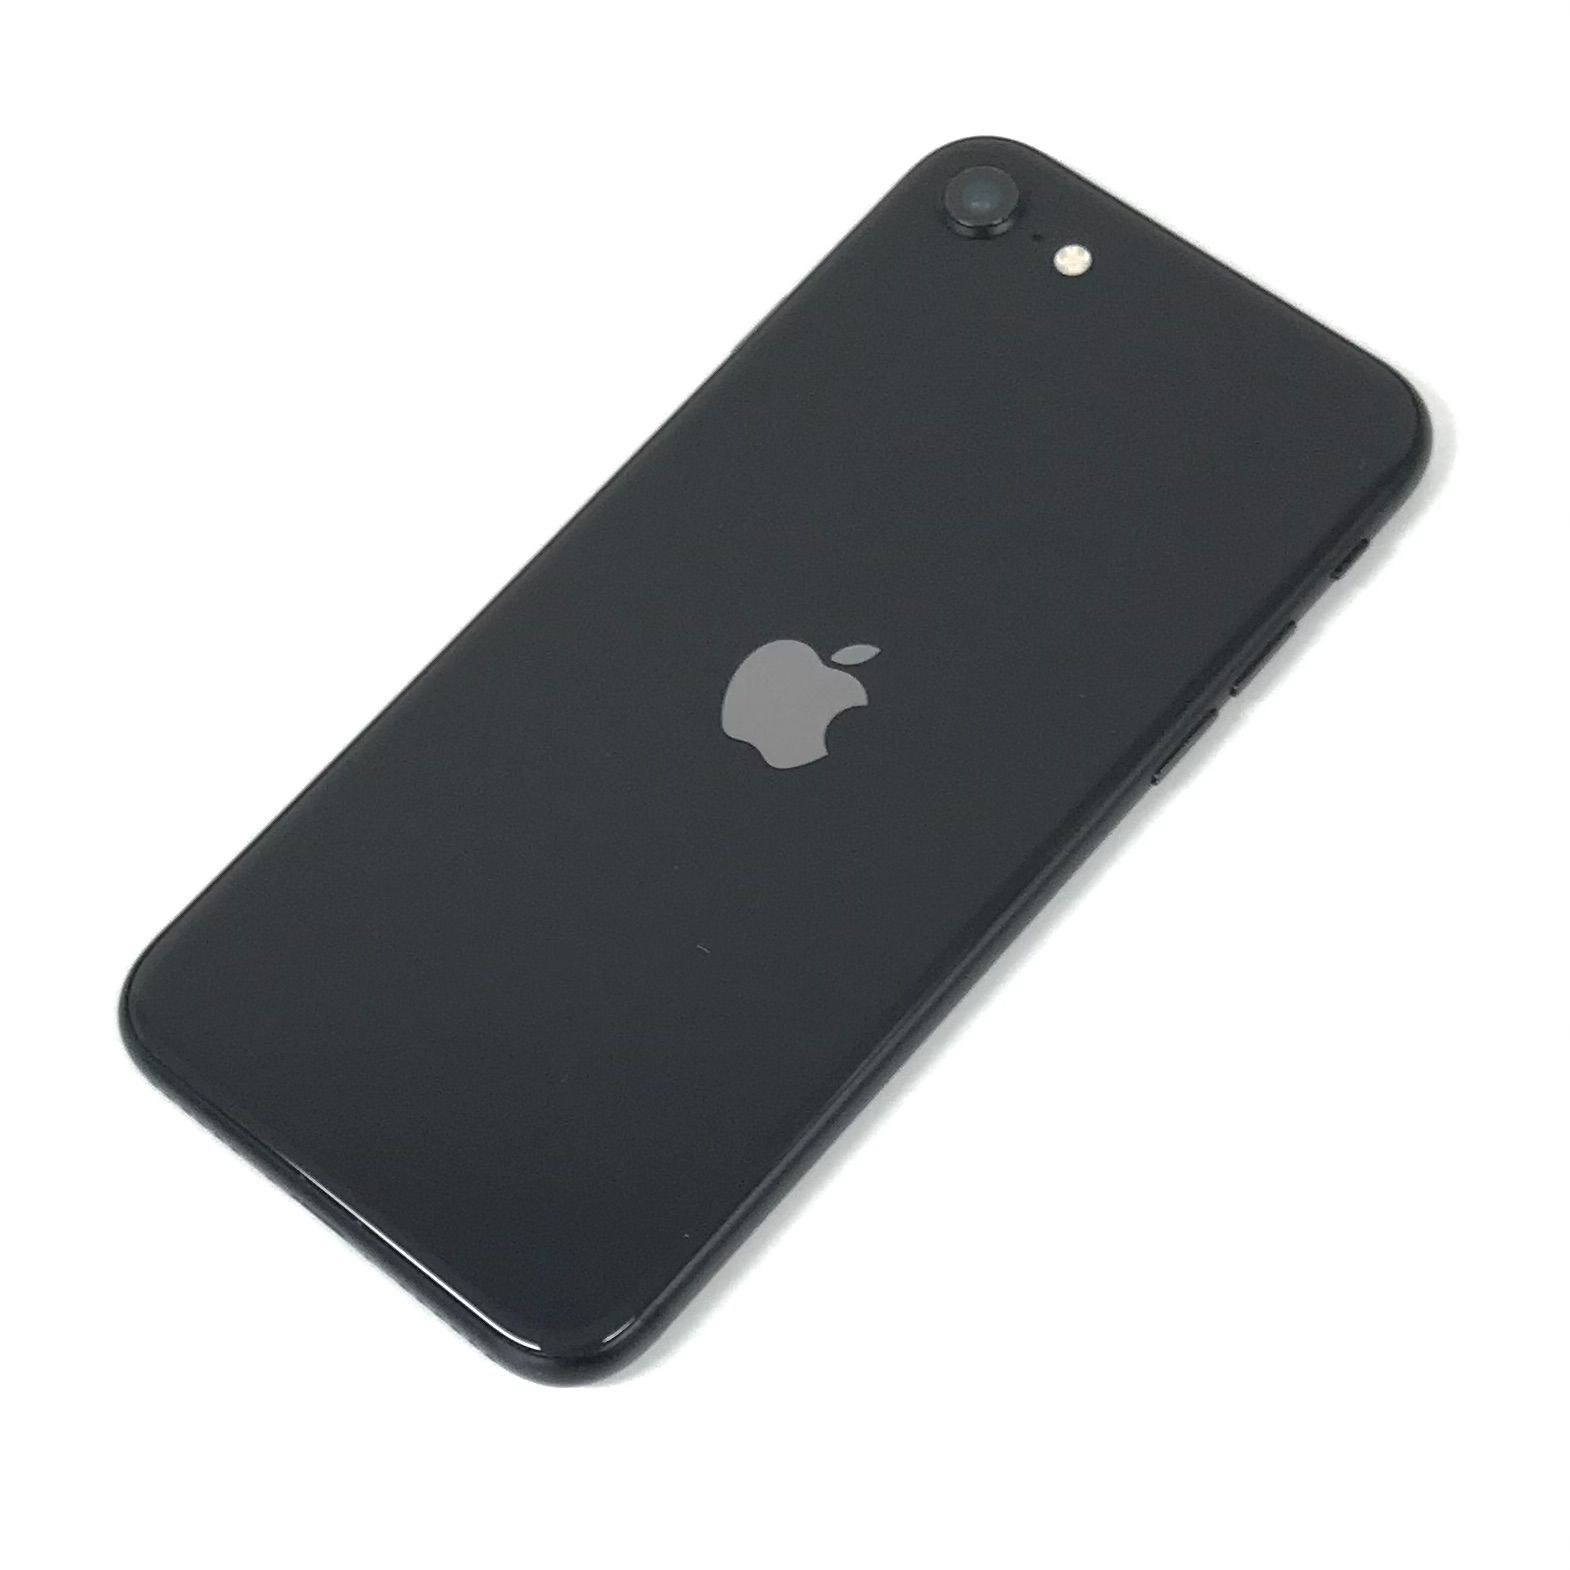 SIMフリー iPhoneSE 第2世代 64GB Black U3 アップル 直前割引 - getwireless.com.tn